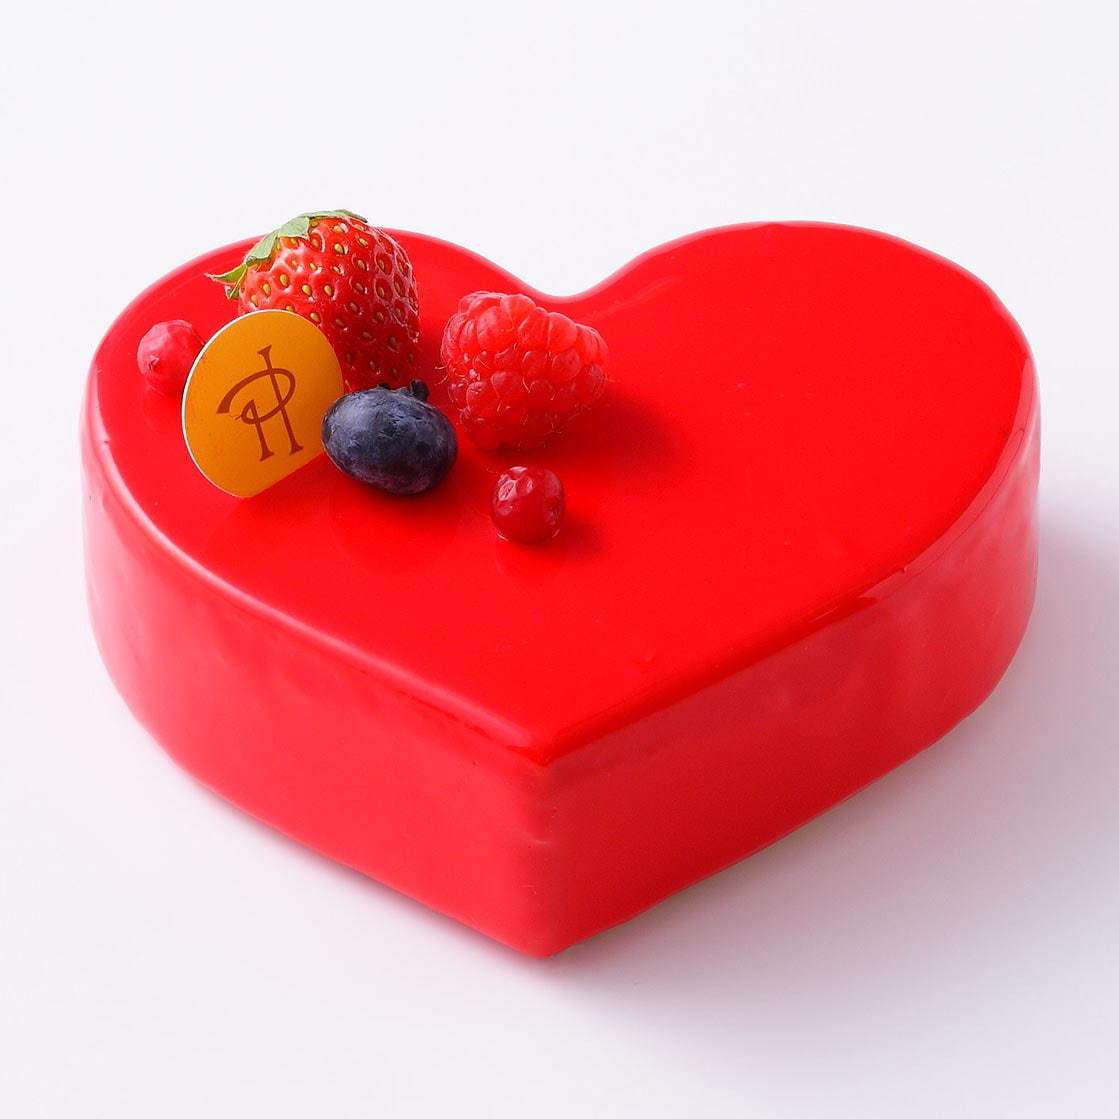 ピエール・エルメ・パリのバレンタイン"杉の実"チョコレートやショコラマカロン、ハート型ケーキも｜写真11